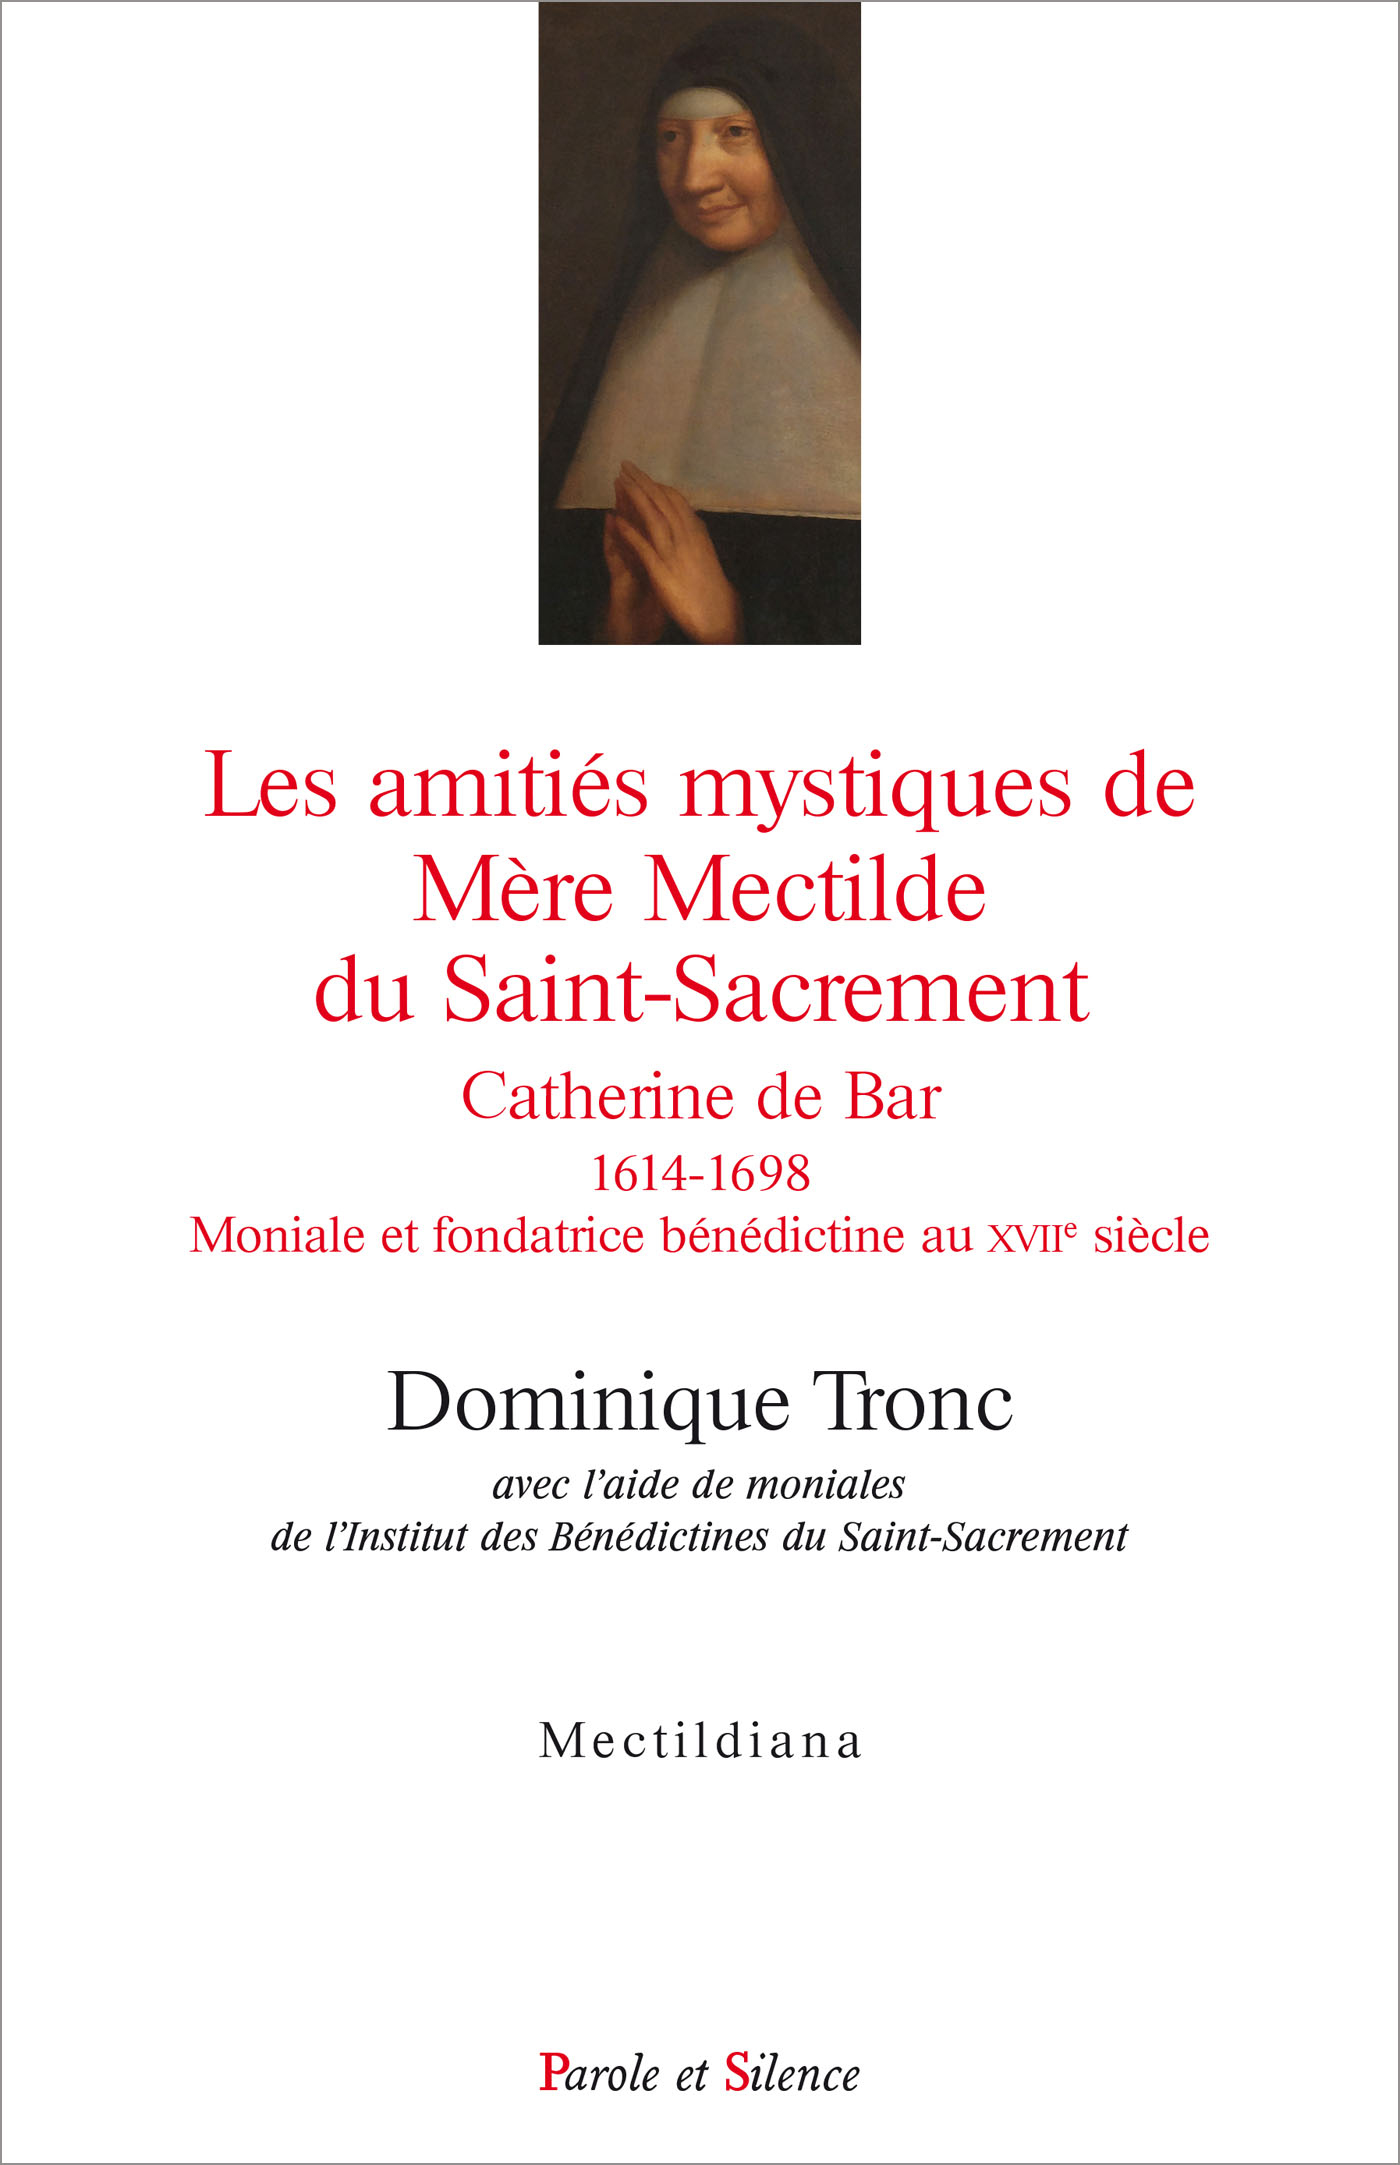 Les amitiés mystiques de Mère Mectilde du Saint-Sacrement 1614-1698